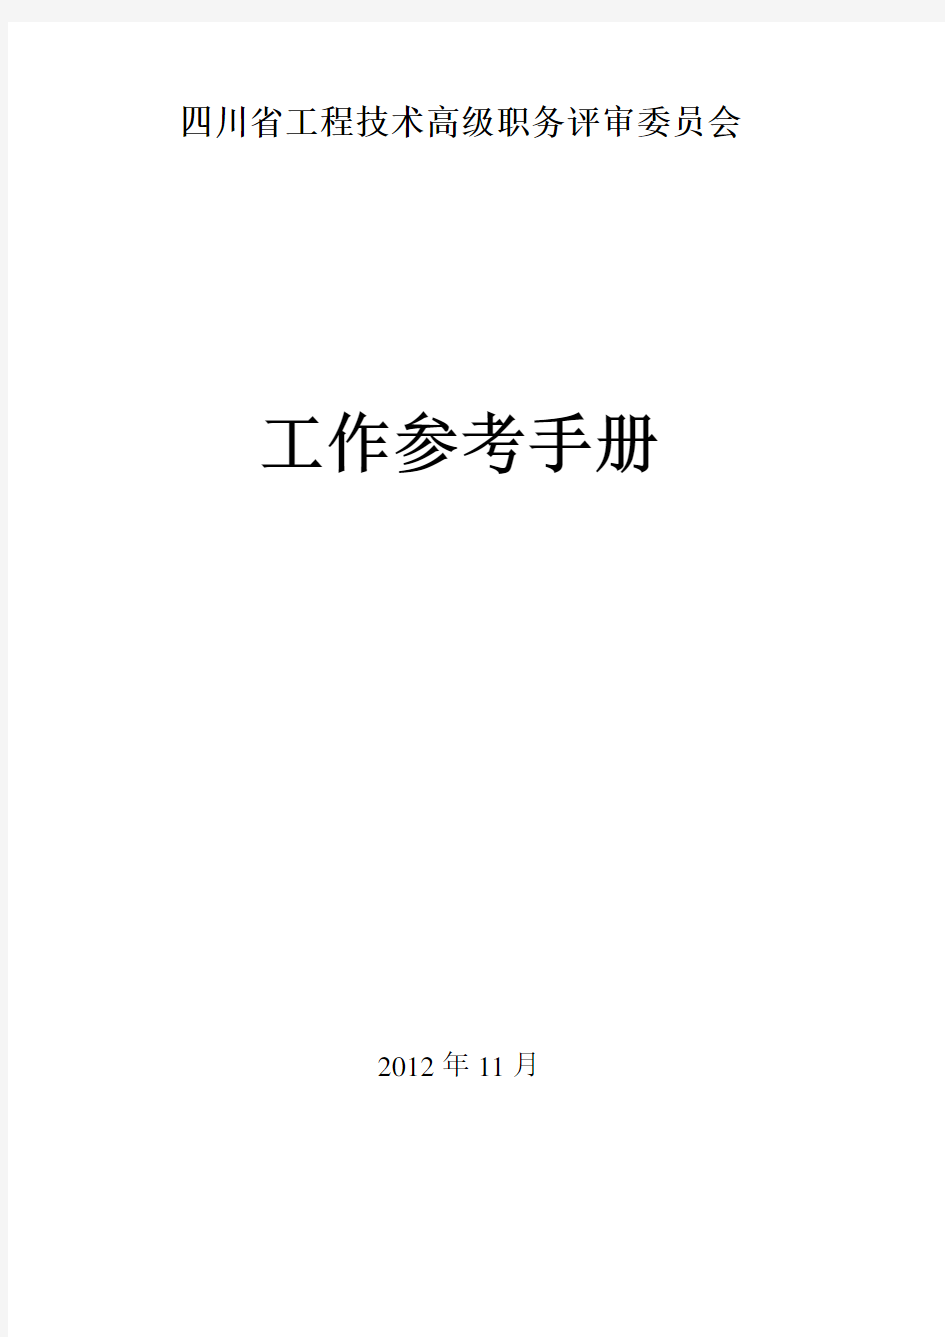 (工作规范)四川省工程技术高级职务评审委员会工作参考手册